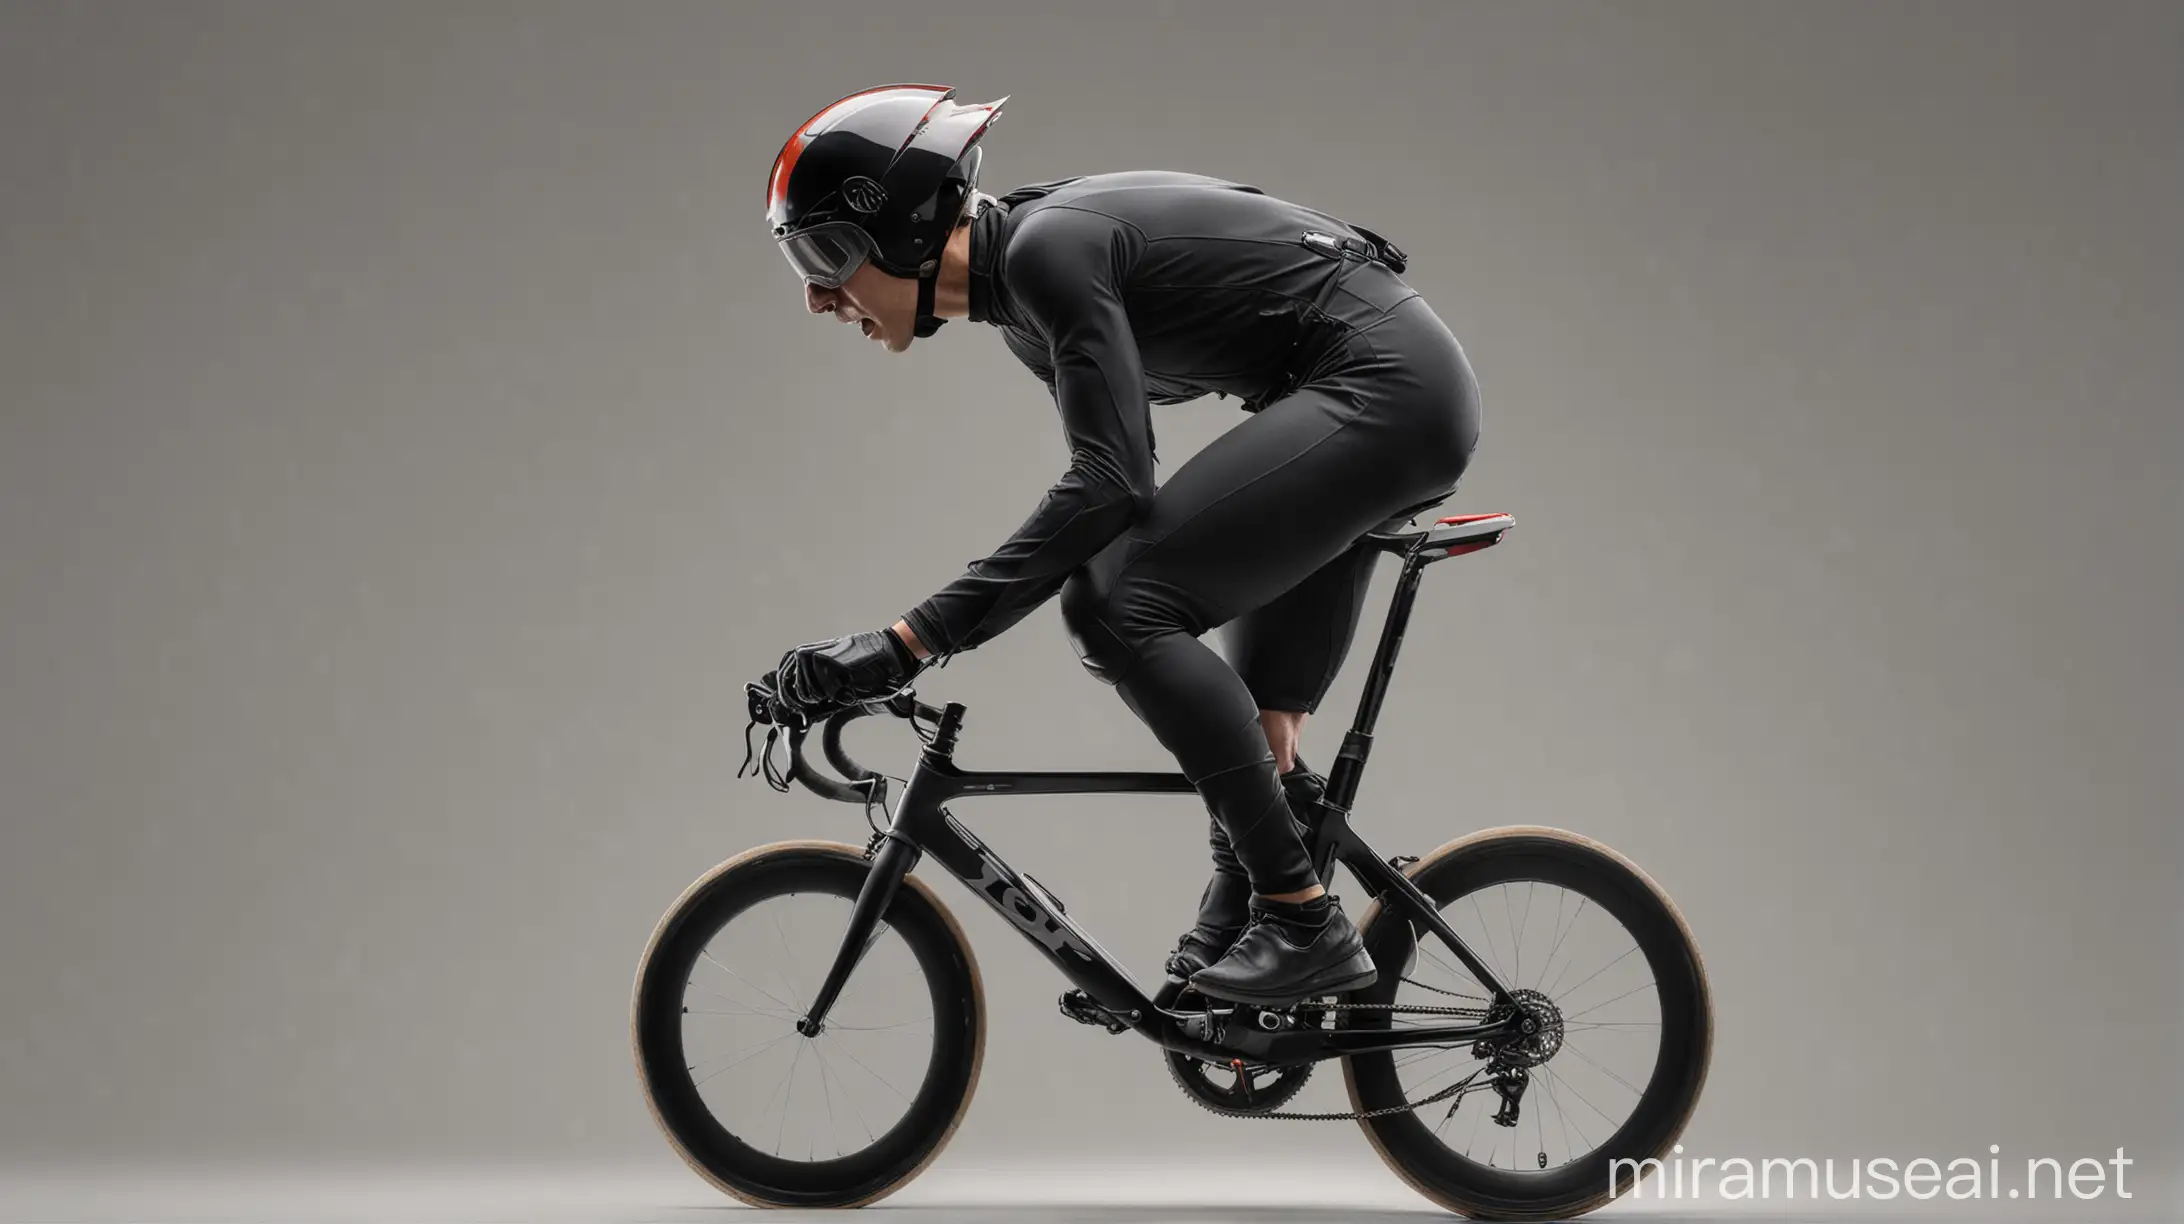 Ciclista de velocidad con traje negro, casco y lentes. Vista lateral. Sin fondo.